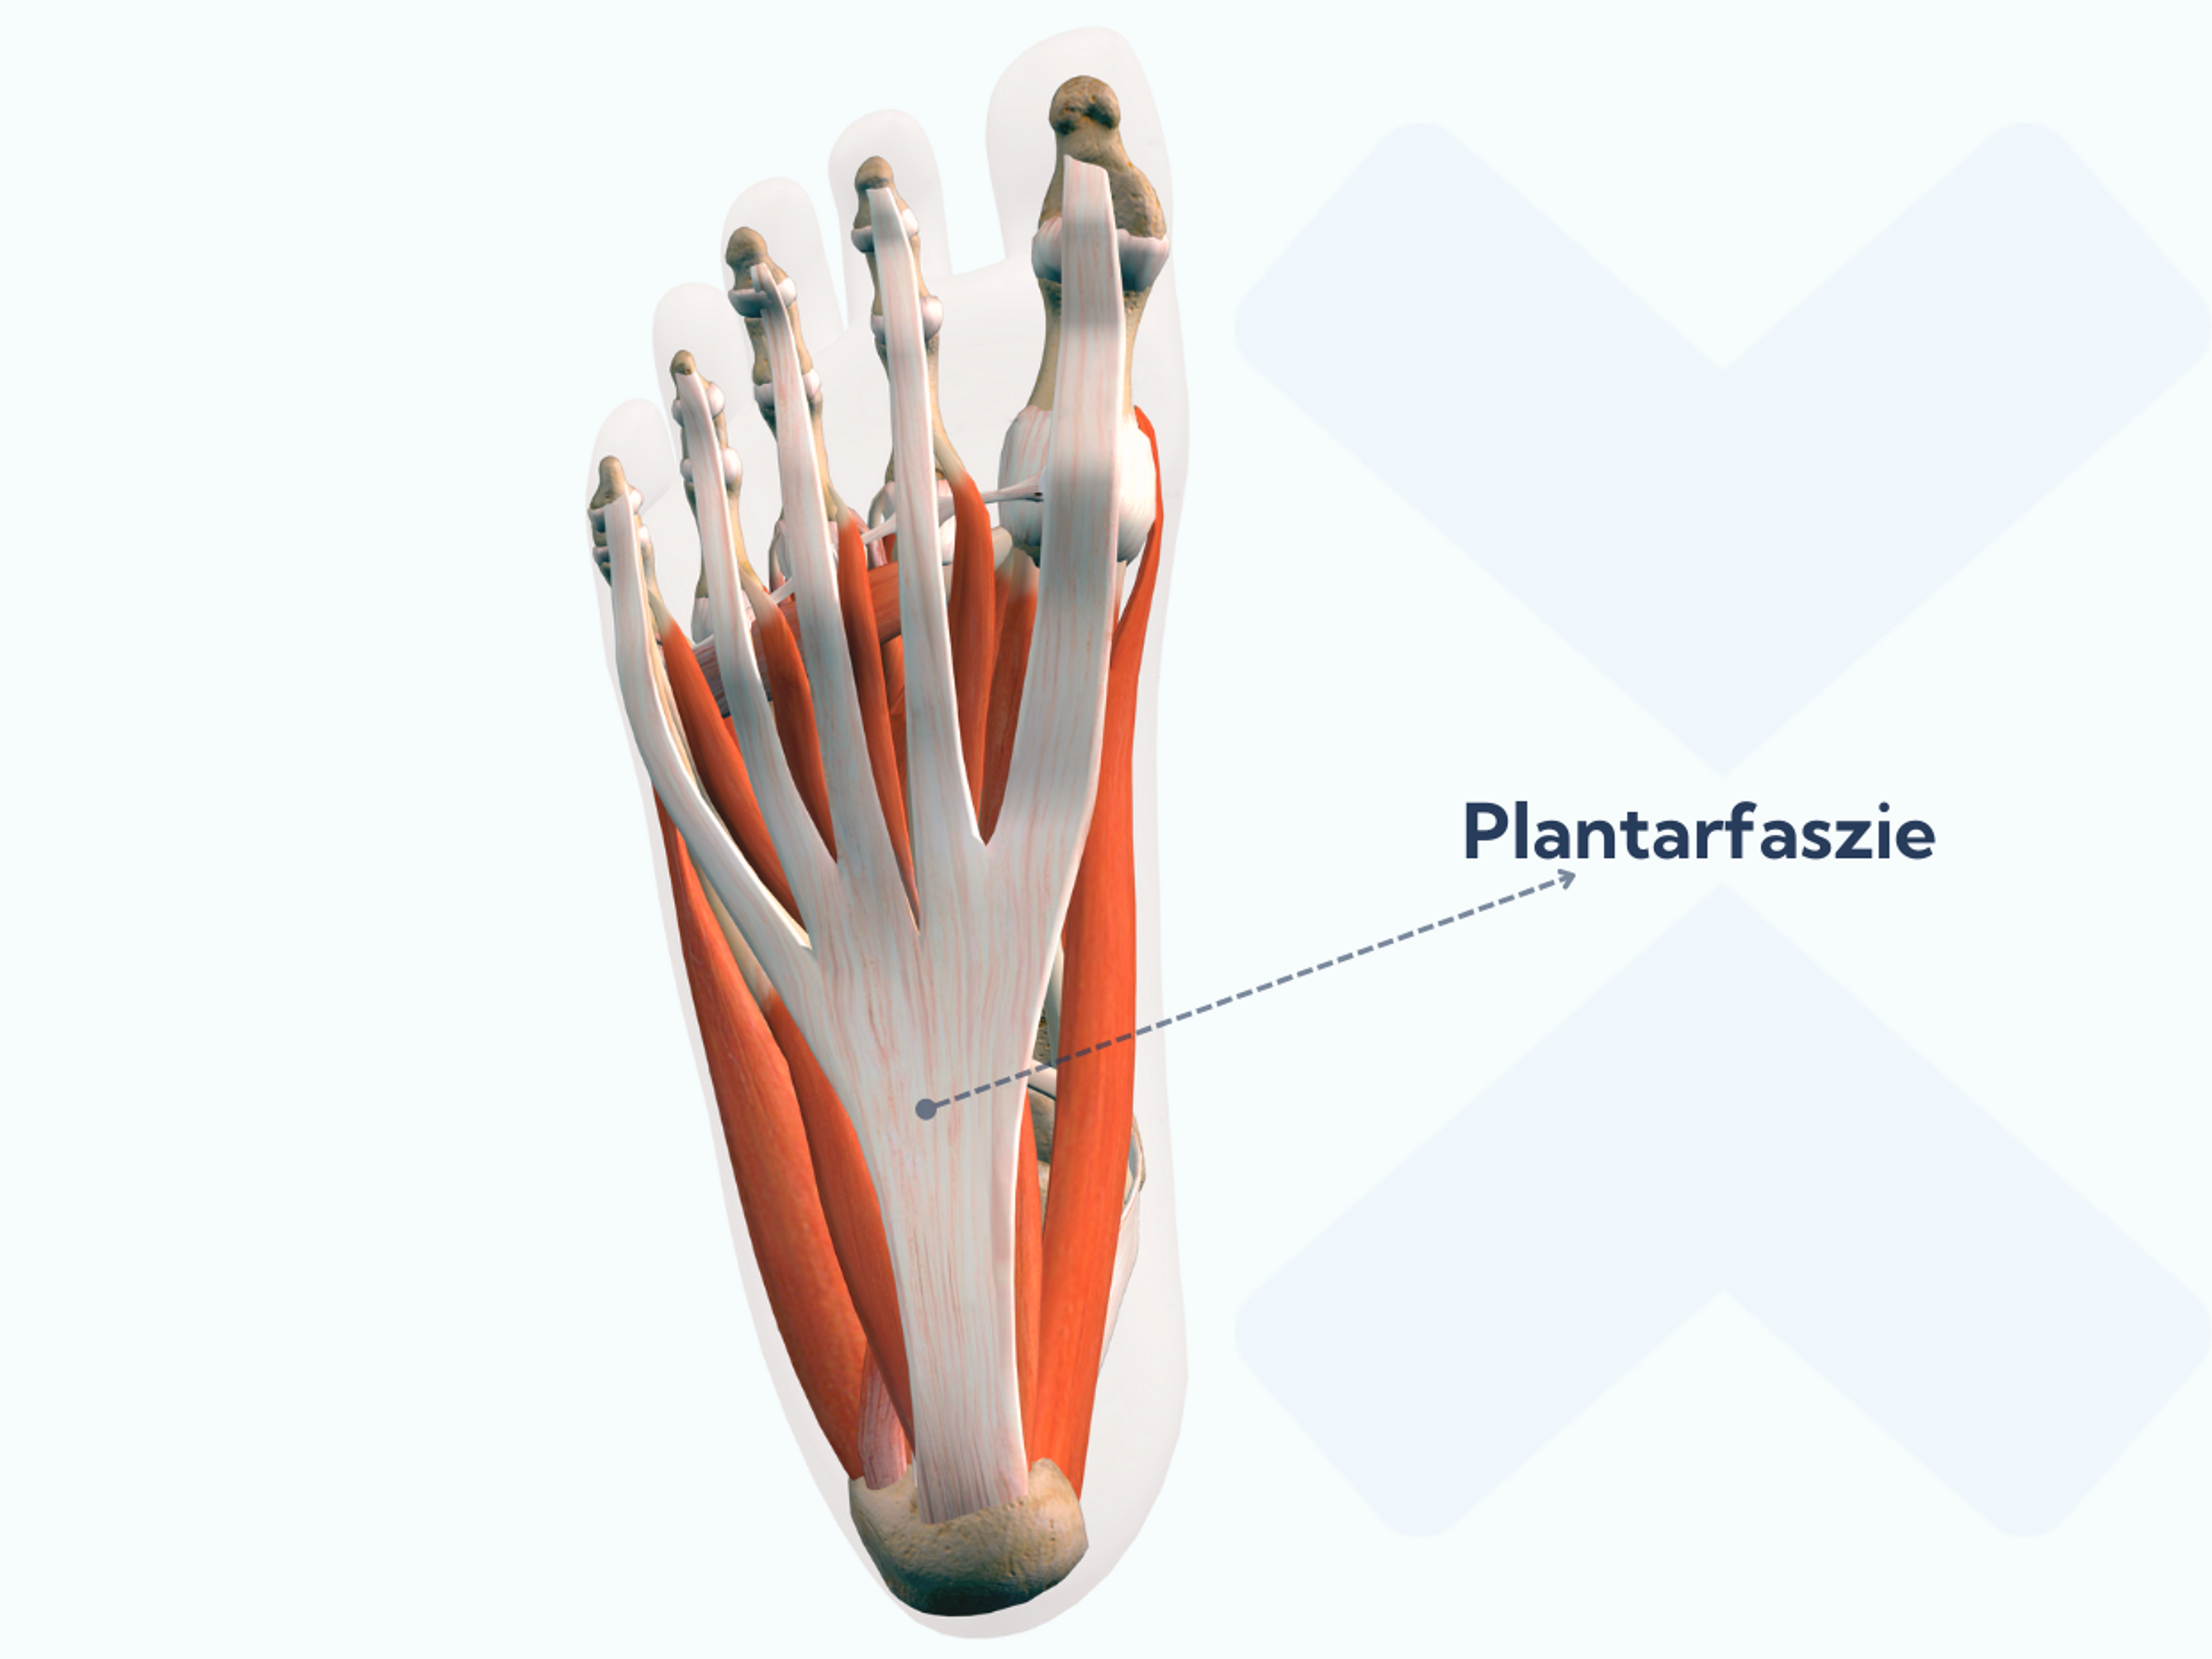 Die Ursachen der Plantarfasziitis liegen in der Anatomie: Die Plantarfaszie verläuft auf der Fußunterseite vom Fersenbein bis zu den Zehen.